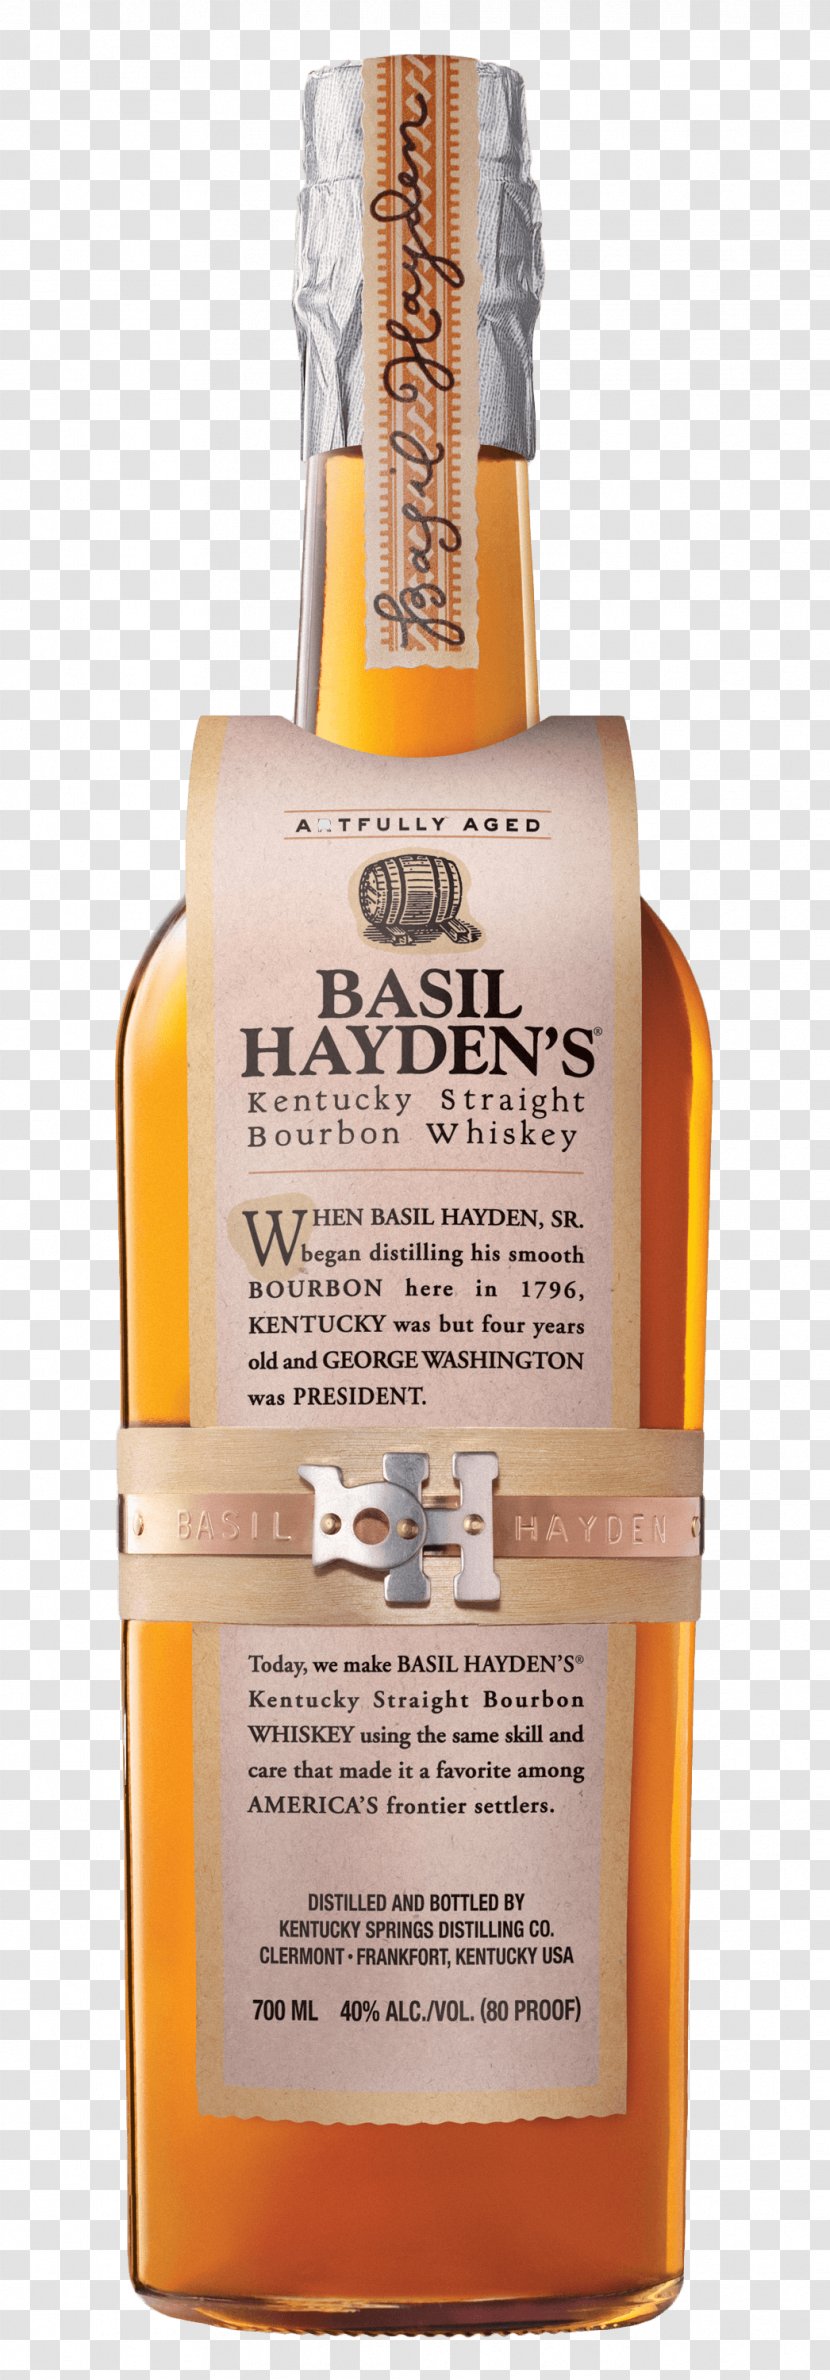 Basil Hayden's Bourbon Whiskey Rye Distilled Beverage - Whisky.png Transparent PNG